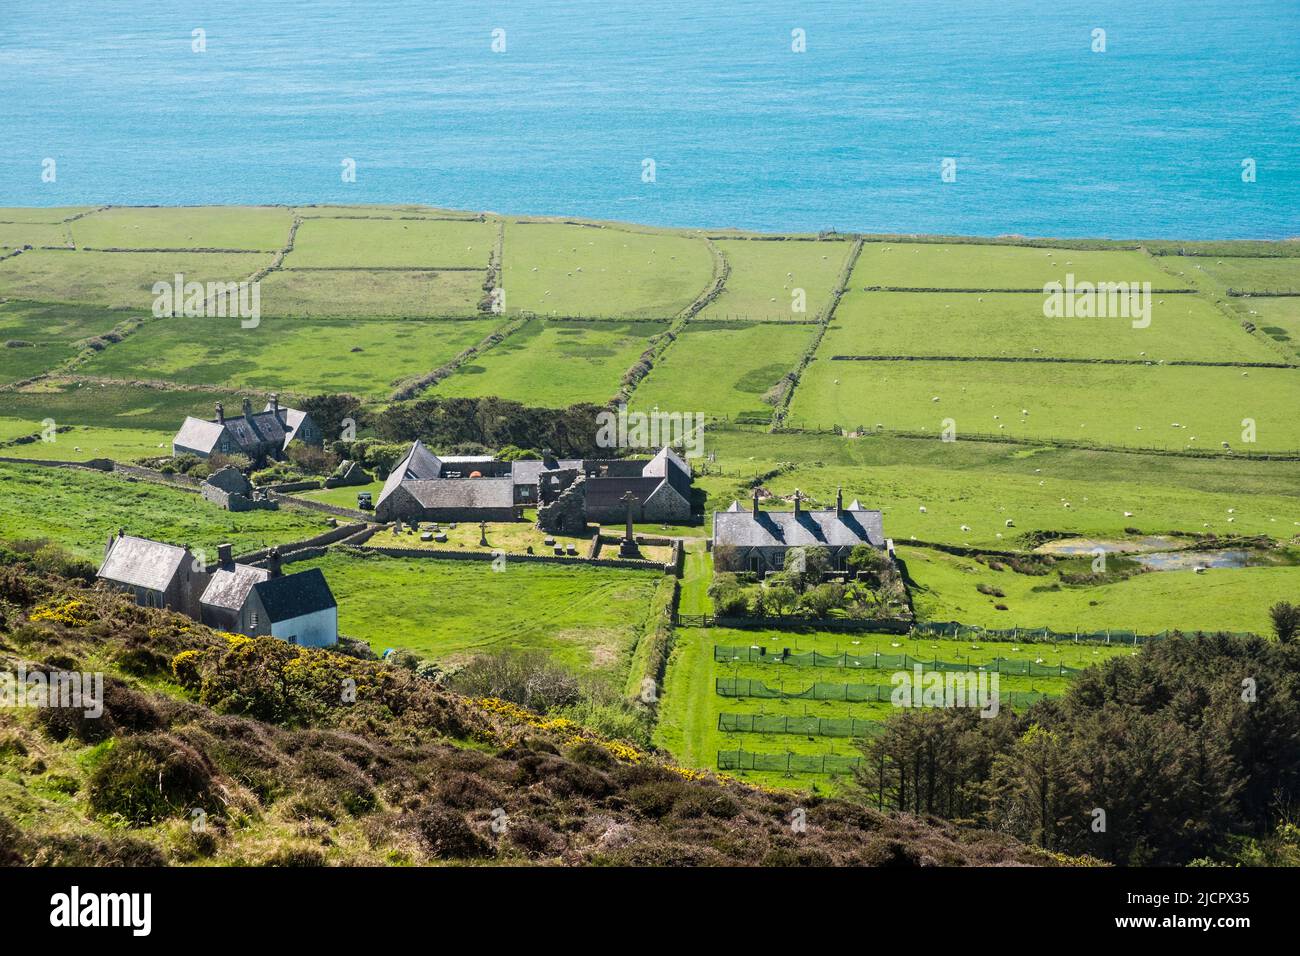 Blick auf die St. Mary's Abbey und die Hütten von Mynydd Enlli mit Schafen, die auf Feldern auf dem Meer grasen. Bardsey Island, Llyn Peninsula, Gwynedd, Wales, Großbritannien Stockfoto